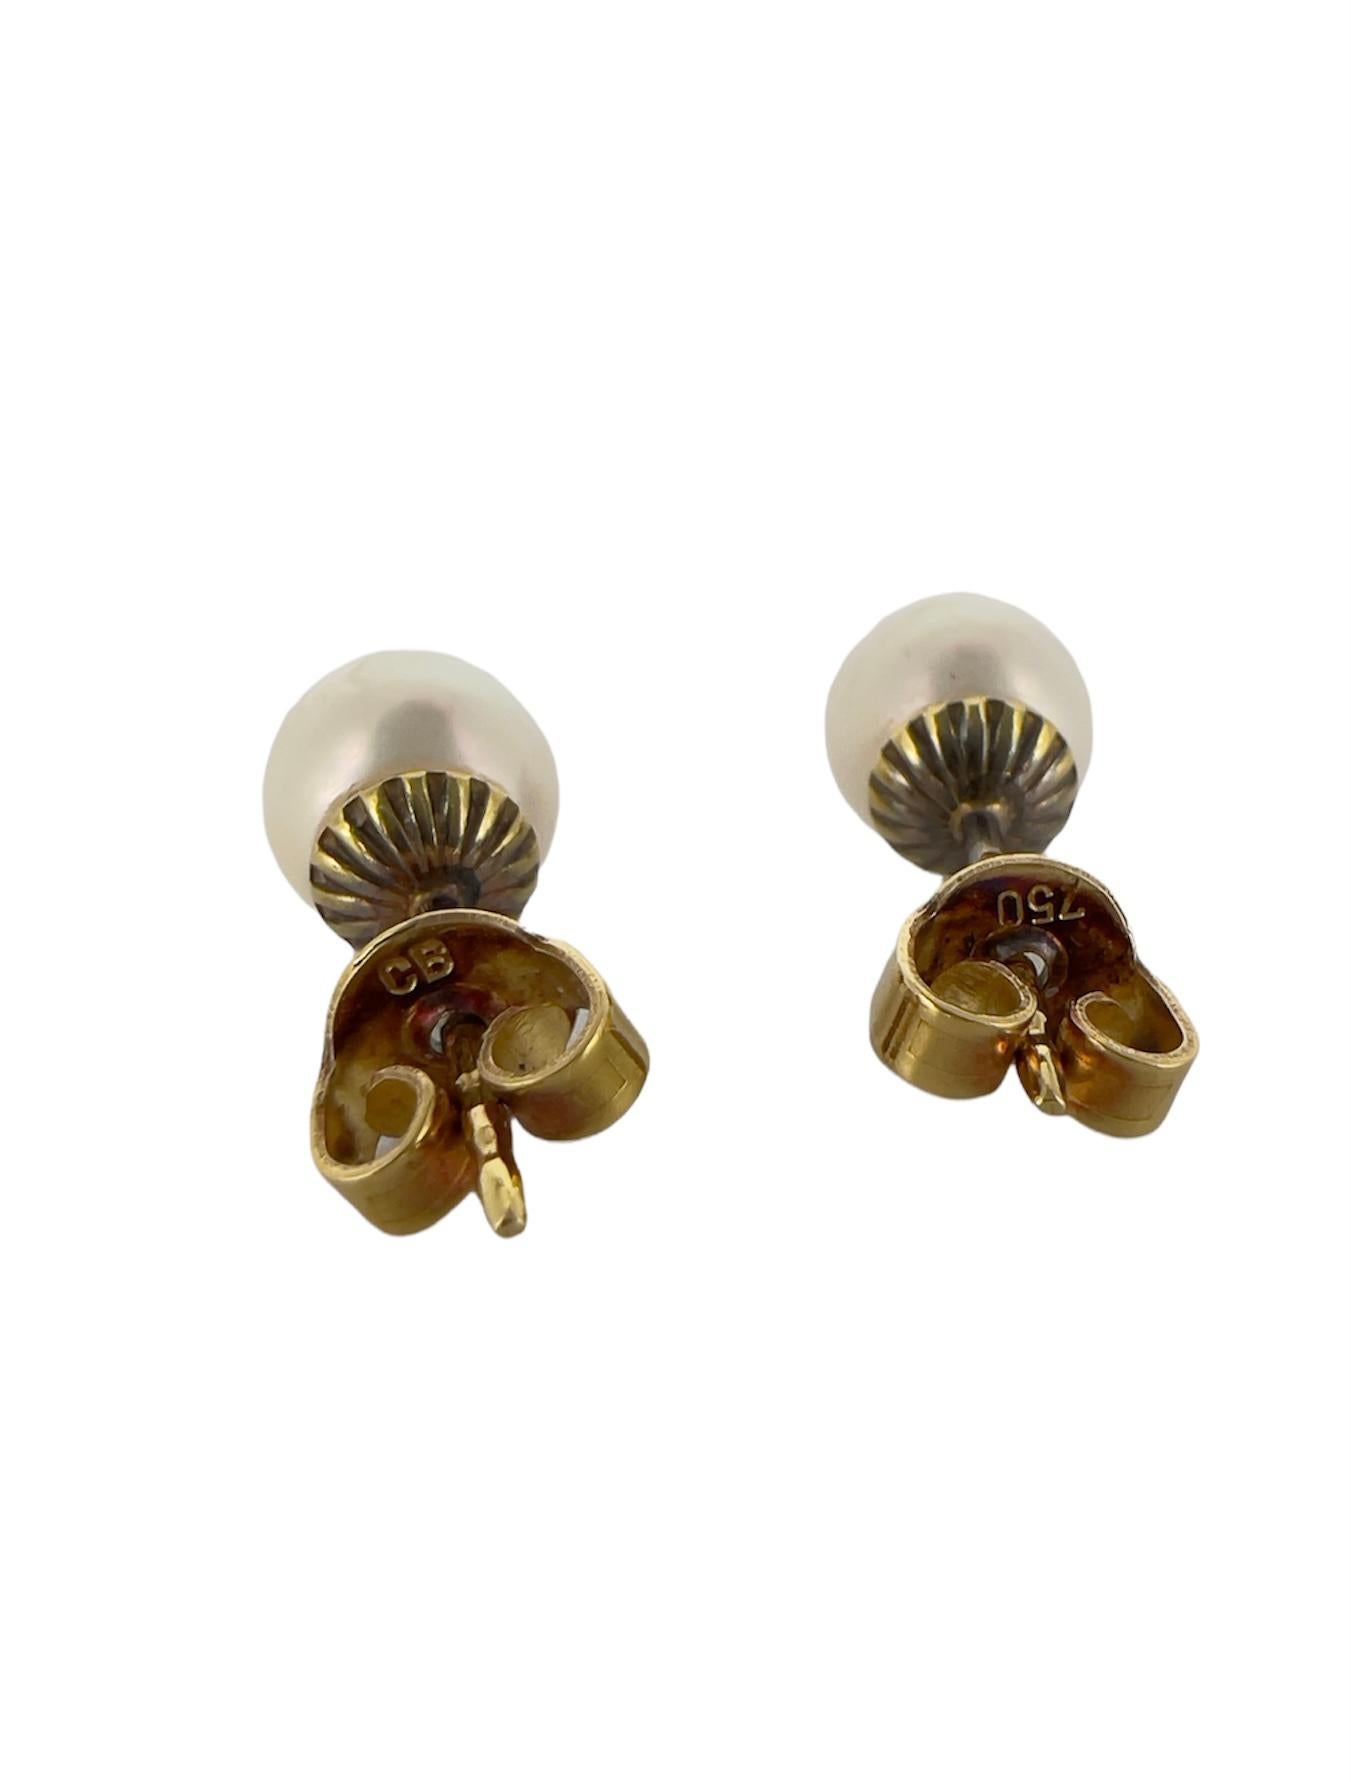 750 gold earrings